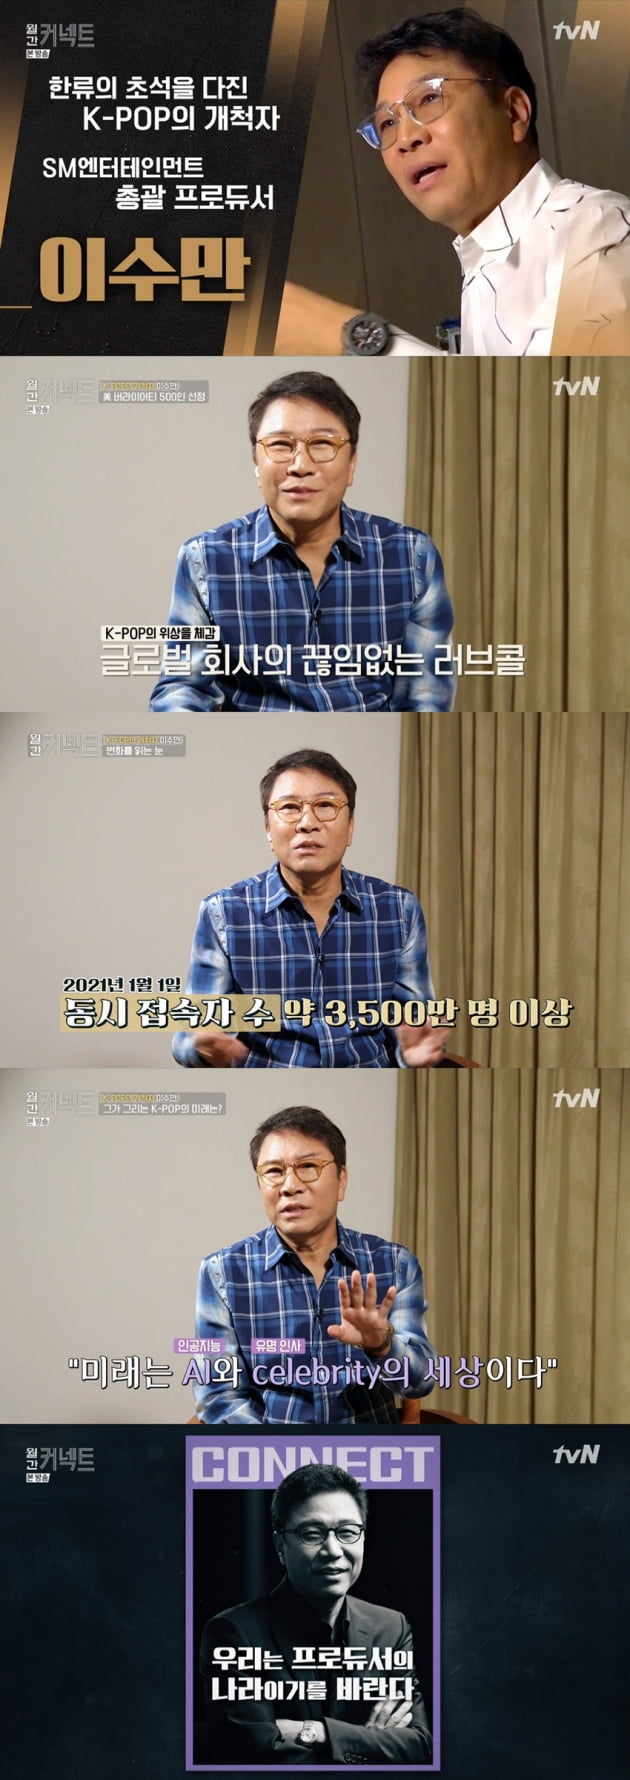 tvN '월간 커넥트' 이수만 총괄 프로듀서 캡처